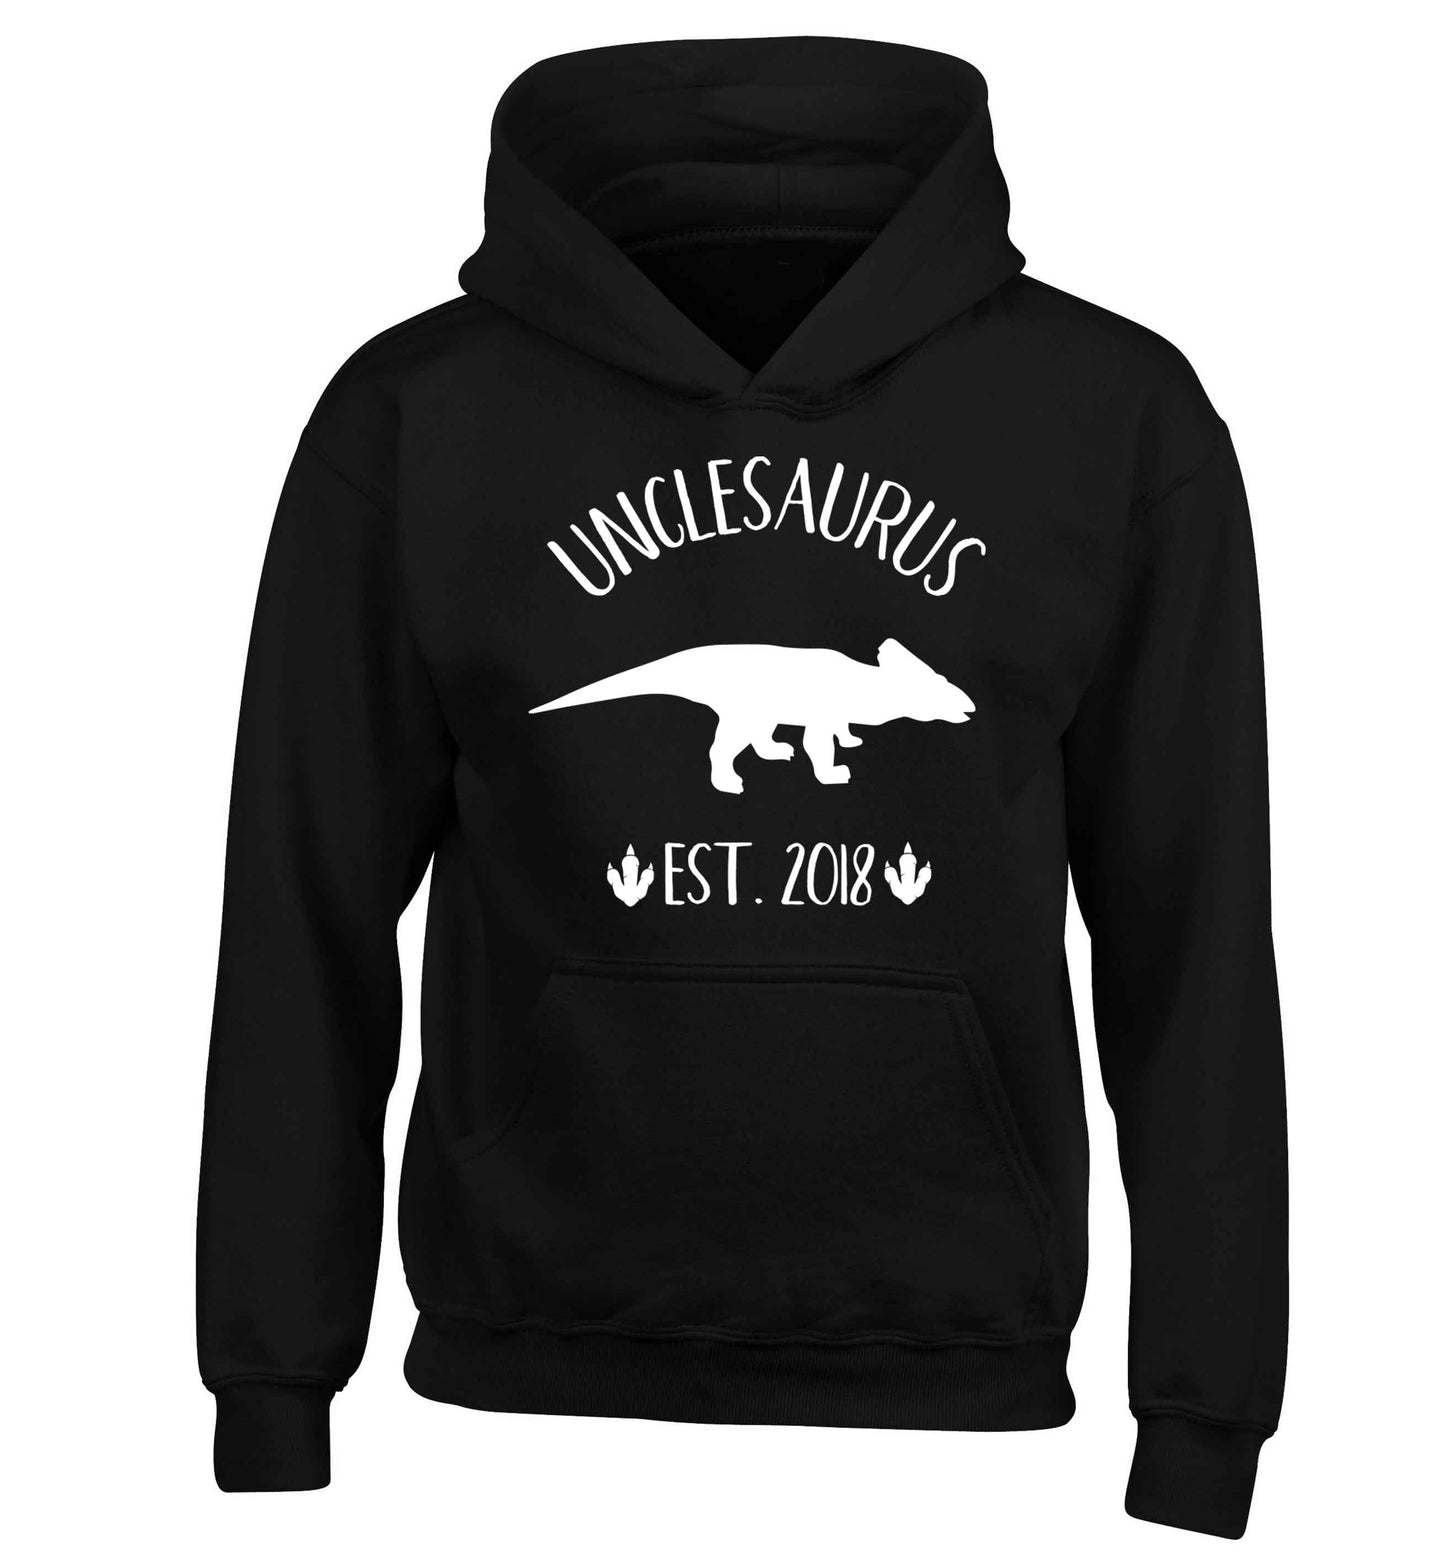 Personalised unclesaurus since (custom date) children's black hoodie 12-13 Years